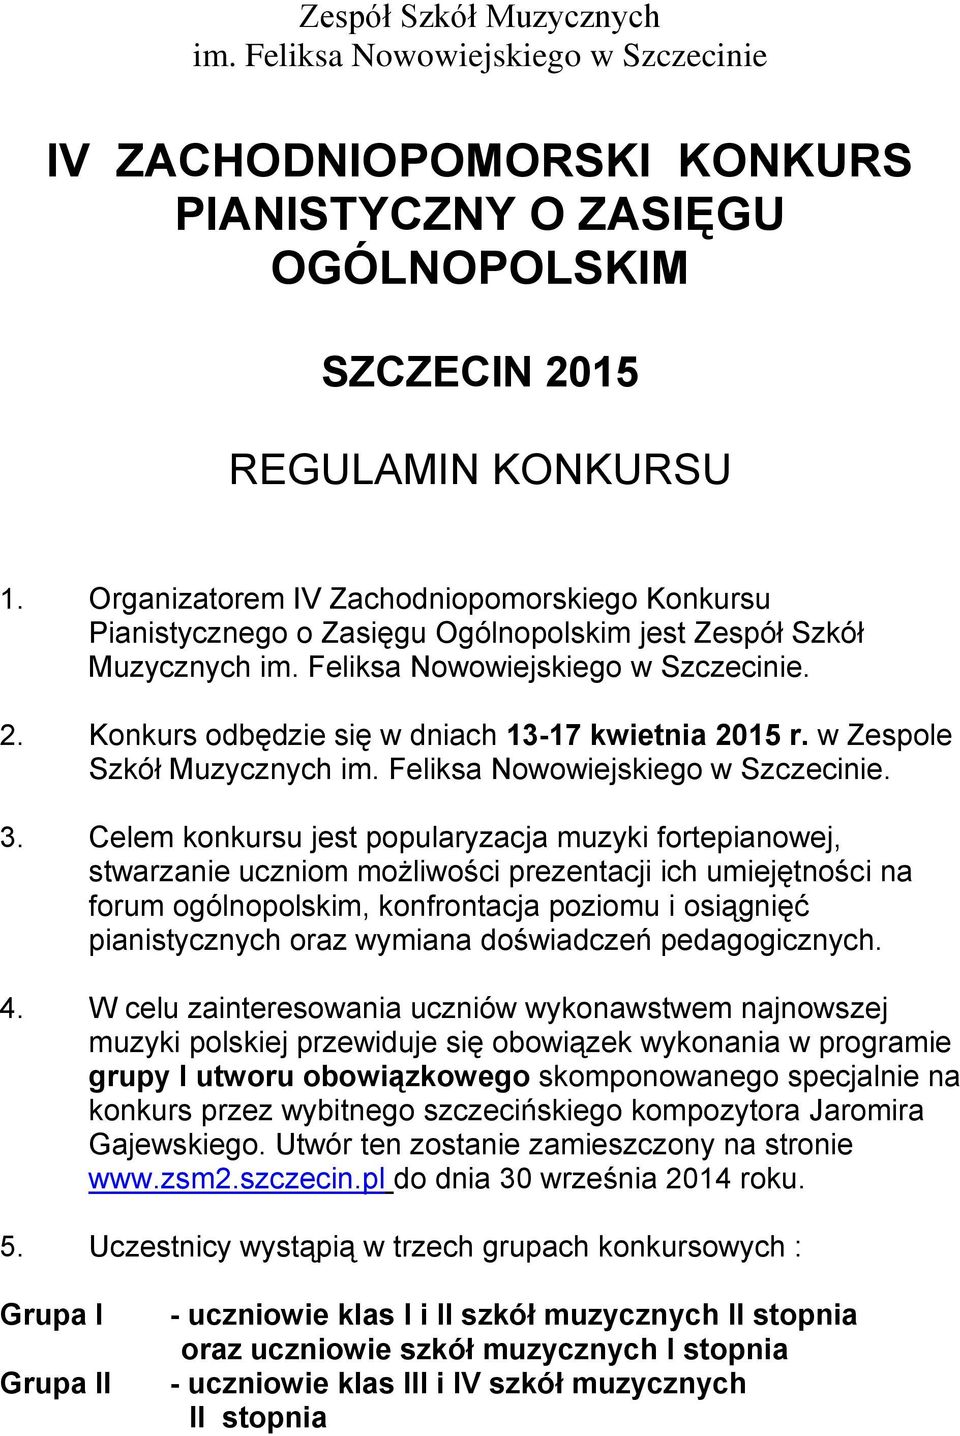 Konkurs odbędzie się w dniach 13-17 kwietnia 2015 r. w Zespole Szkół Muzycznych im. Feliksa Nowowiejskiego w Szczecinie. 3.